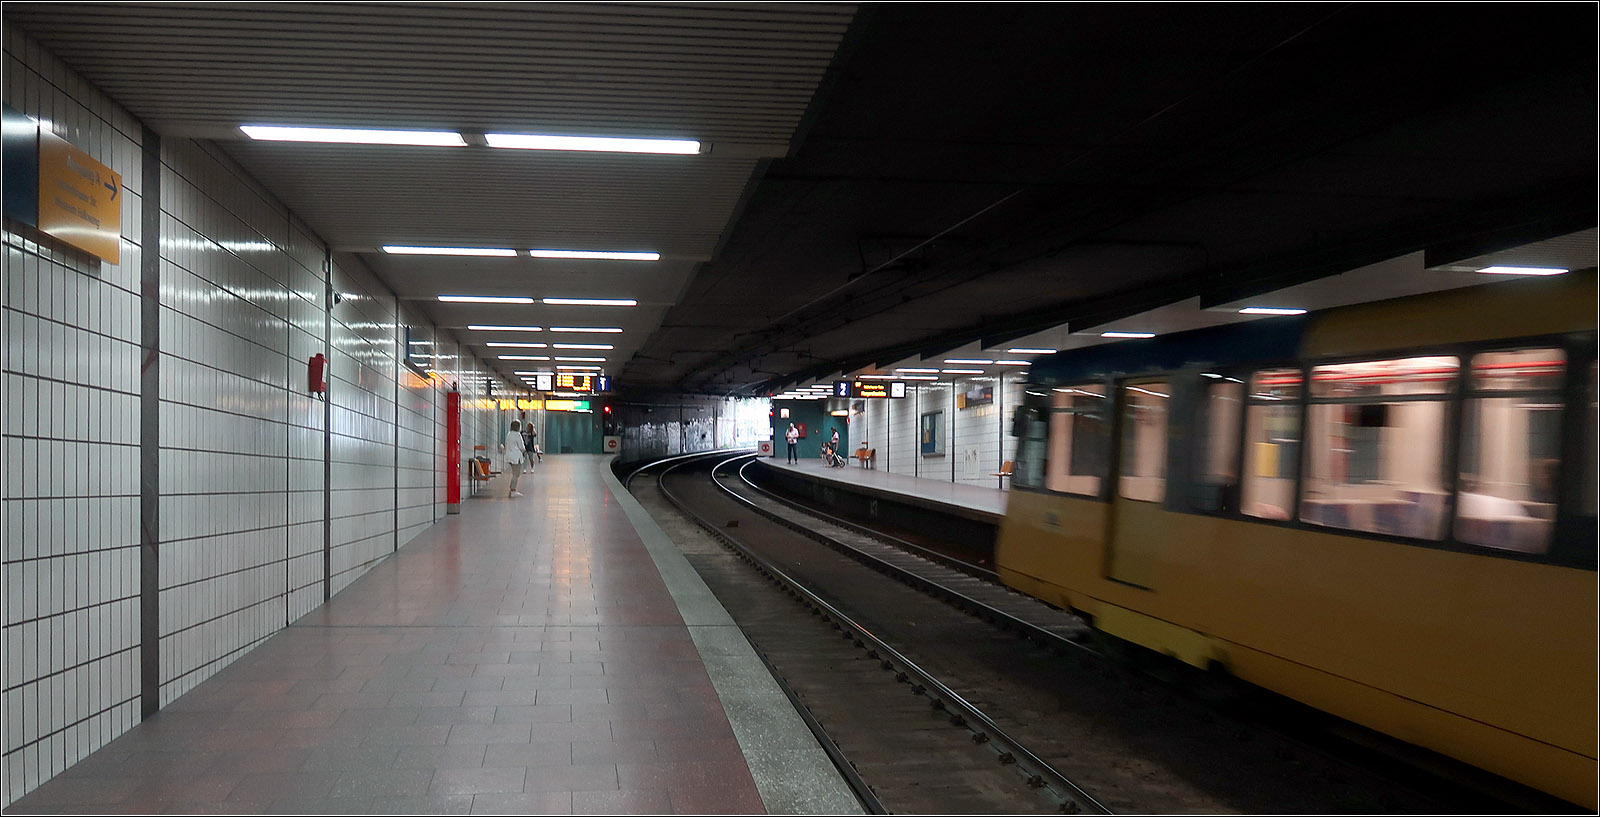 Die wohl steilste U-Station in Deutschland - 

Die Haltestelle Planckstraße an der U17 in Essen hat eine deutliche Steigung. Im Anschluss folgt auch die Rampe zur Oberfläche. Wohl wurde der Rohbau schon erstellt, als in Essen noch an einer U-Straßenbahn geplant wurde, also noch bevor die Idee der Stadtbahn Rhein-Ruhr zur Grundlage der Planungen wurde. Eröffnet wurde dieser Tunnelabzweig im Jahr 1981 zusammen mit der umgespurten Strecke zur Margarethenhöhe, die mit Stadtbahnwagen im sogenannten Stadtbahn-Vorlauf betrieben wird, als für den Betrieb mit Stadtbahnwagen umgebauten Straßenbahnstrecken.
Im Gegensatz dazu wurde bei der Stadtbahn Rhein-Ruhr vom Straßenbahnvorlauf gesprochen, wenn fertige Stadtbahnanlagen wie Tunnelstrecken zunächst noch mit Straßenbahnen betrieben wurden.

23.08.2023 (M)